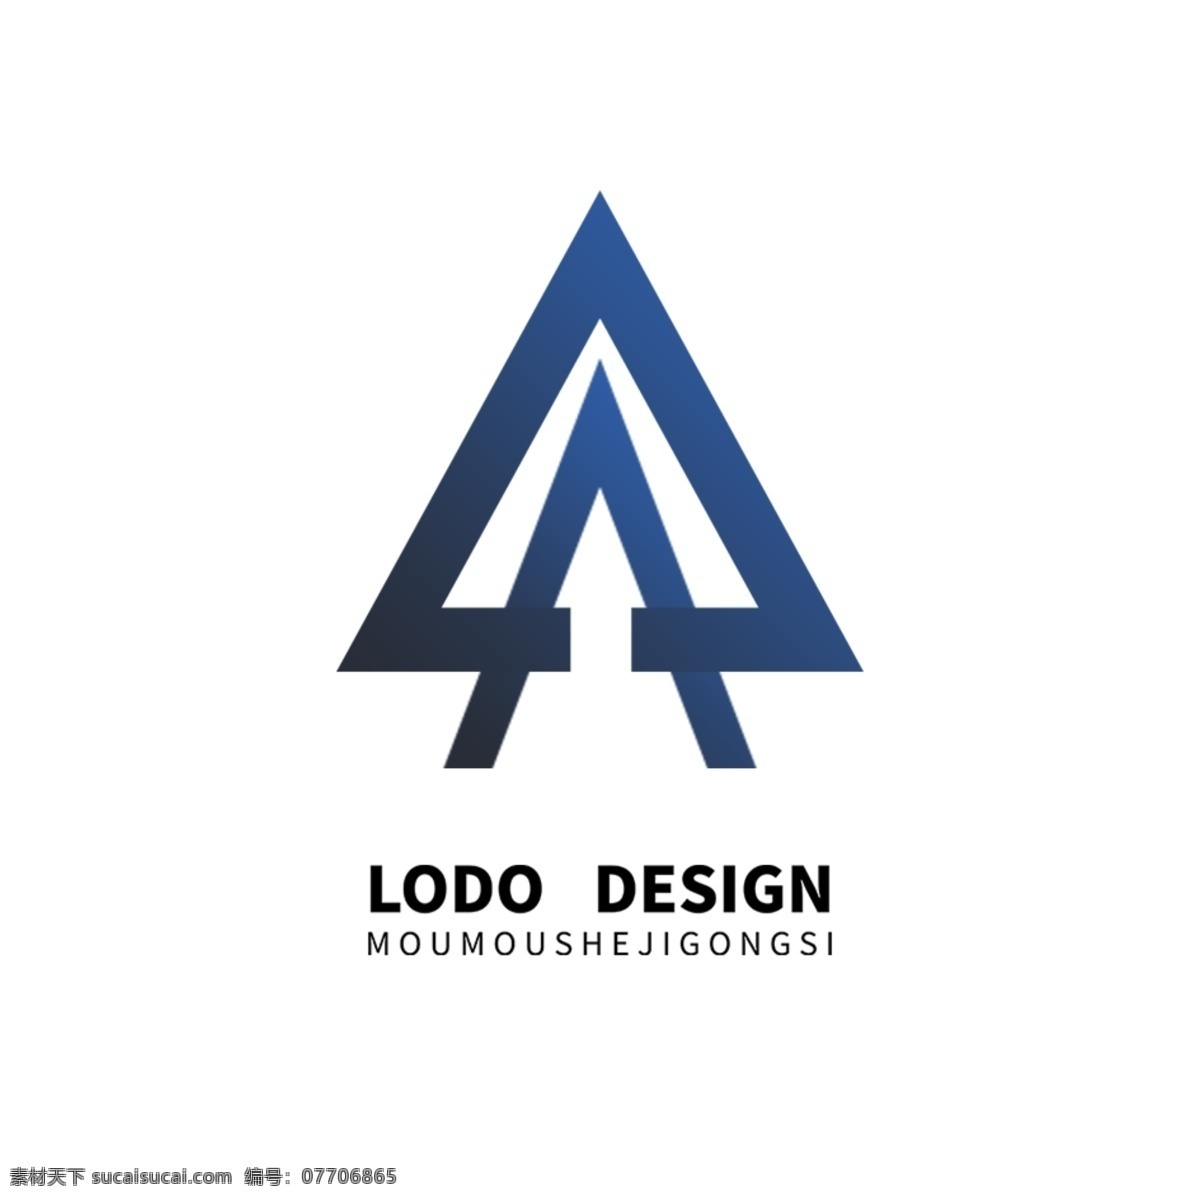 字母 a 帐篷 logo 风筝 蓝色 蓝色logo 帐篷logo 风筝logo logo设计